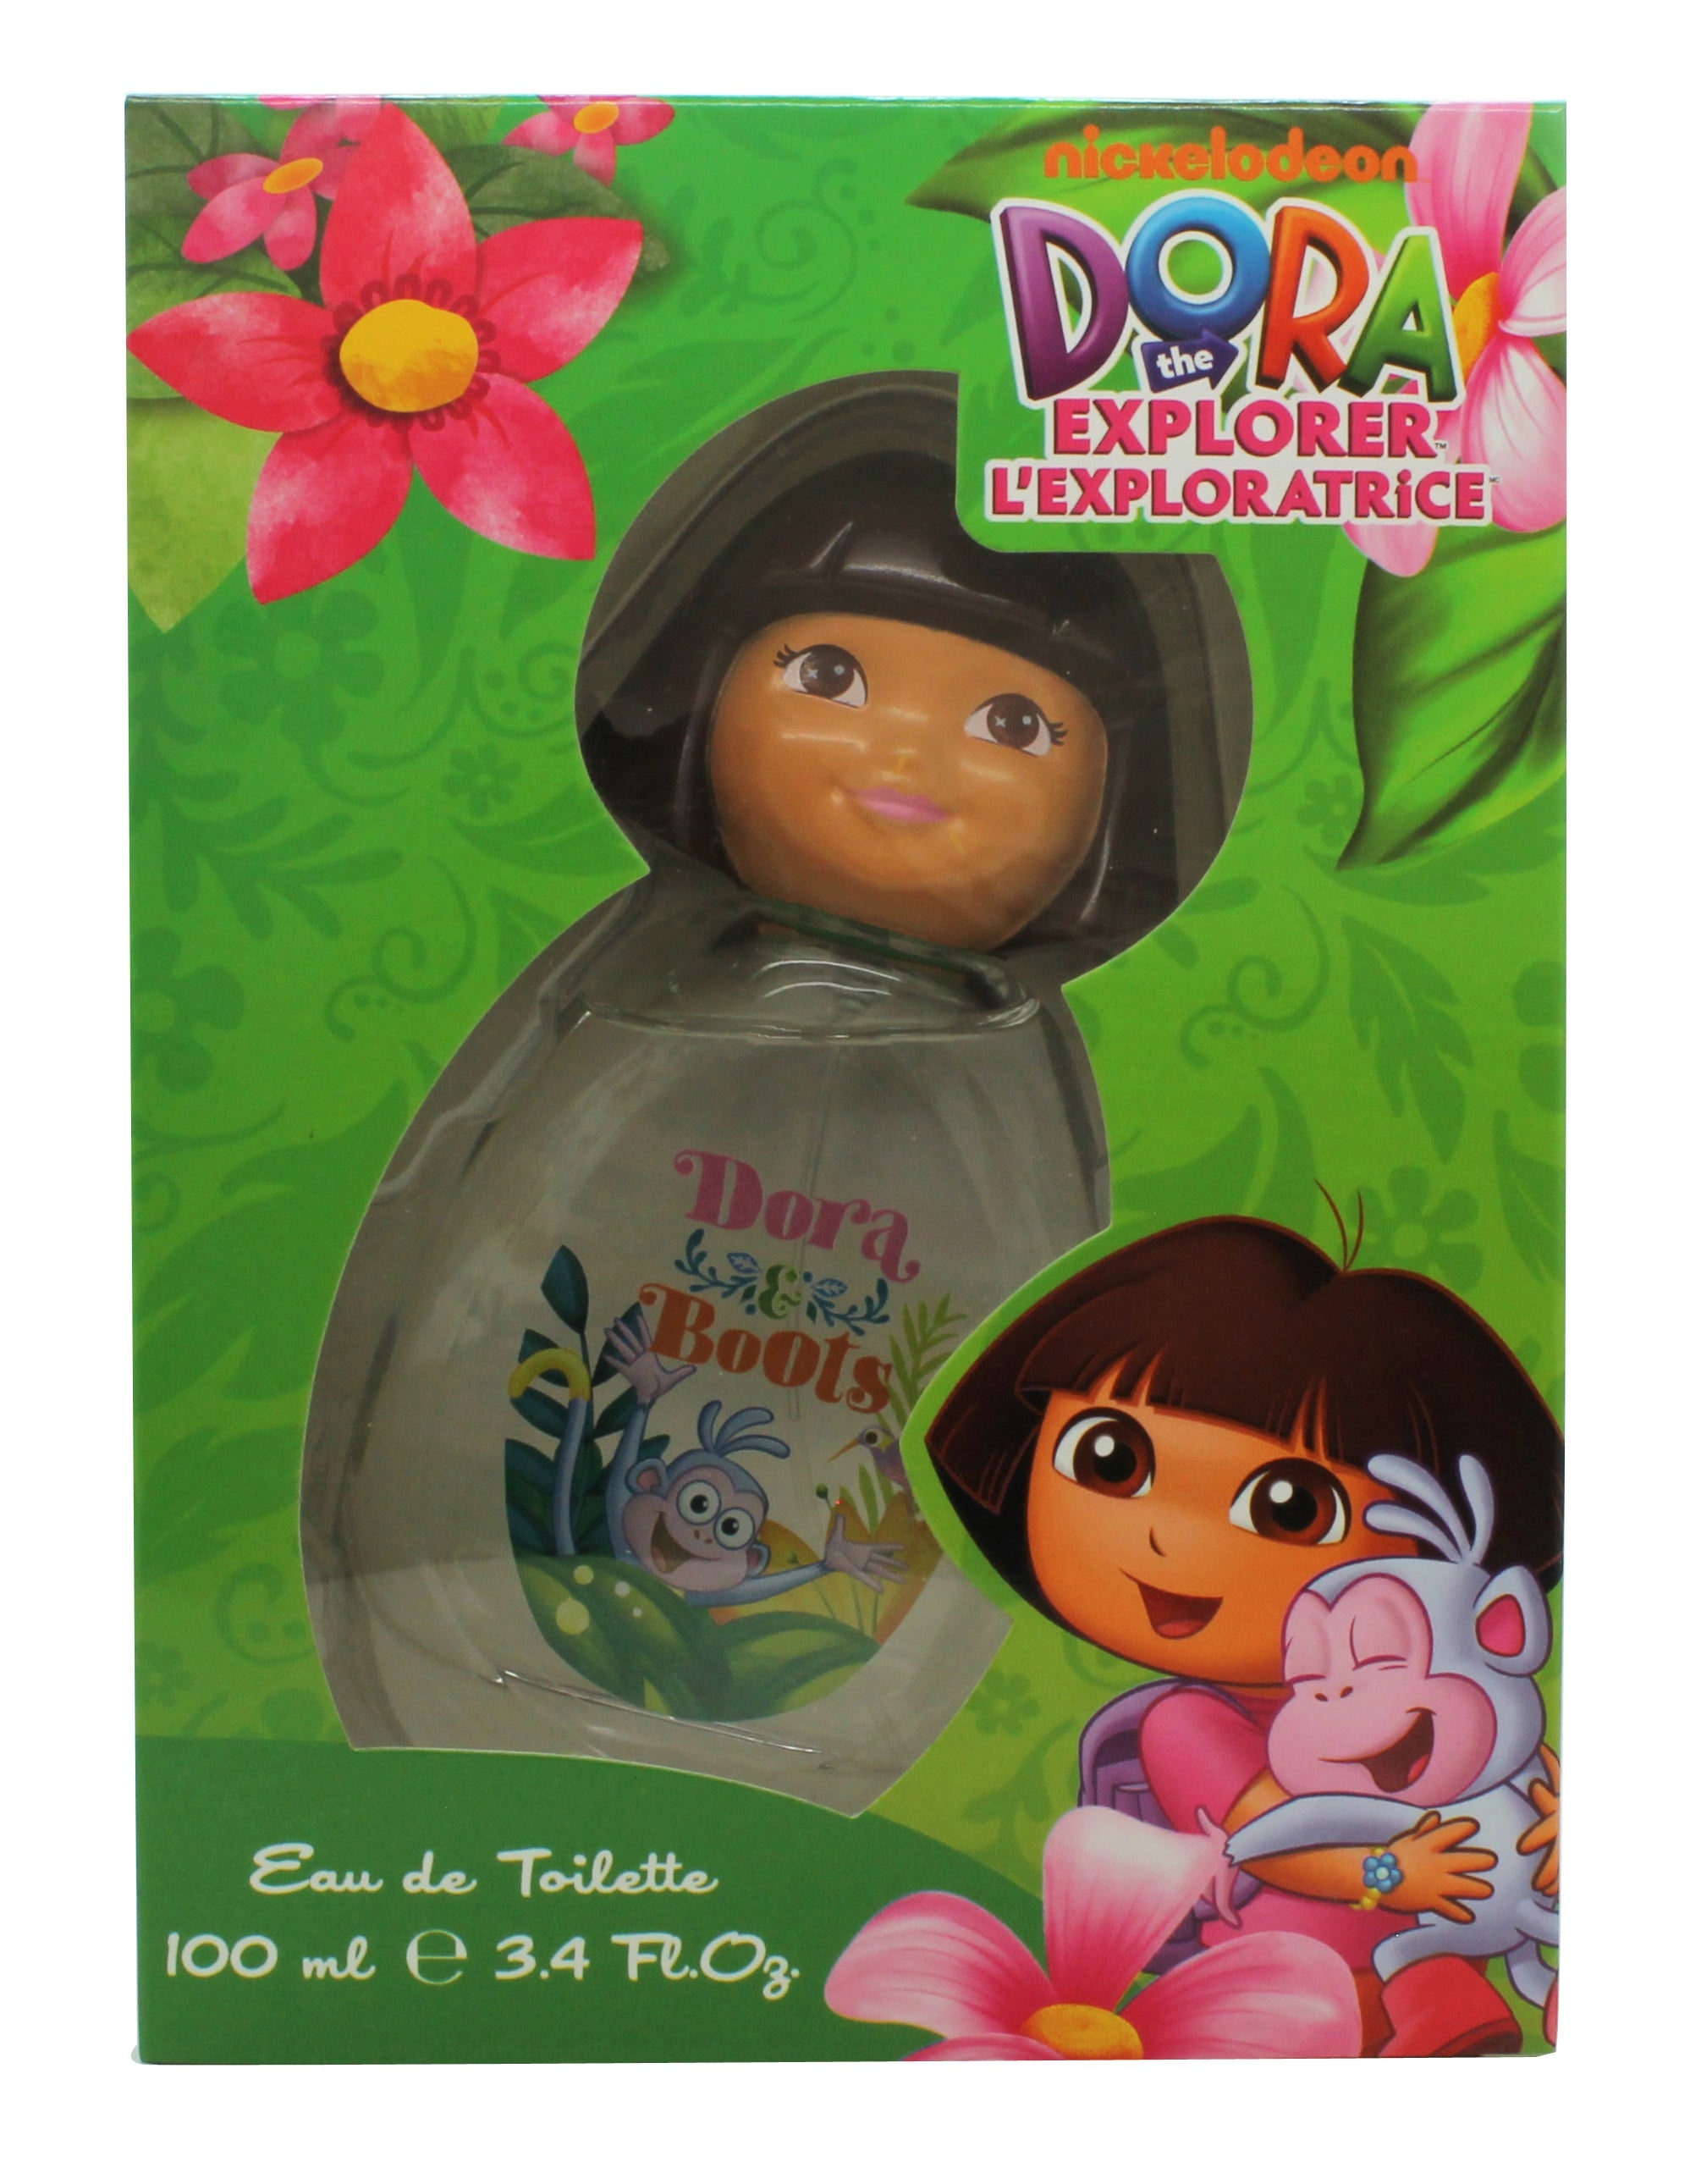 View Dora The Explorer Dora Boots Eau de Toilette 100ml Spray information